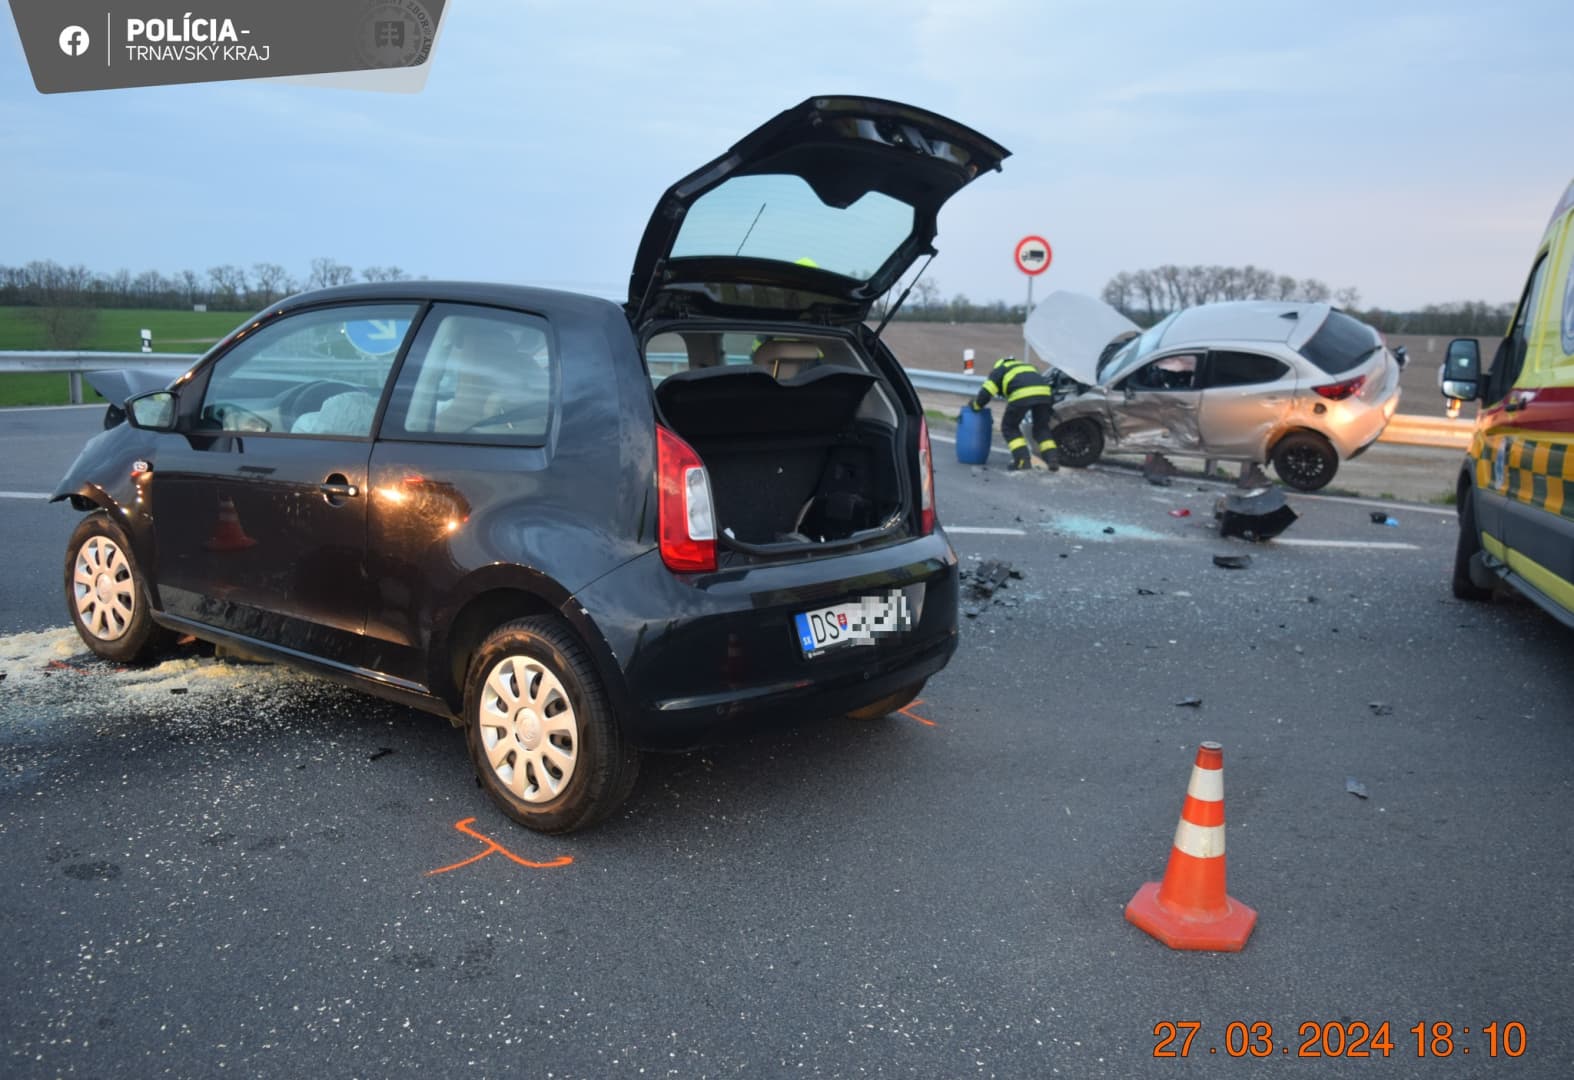 BALESET: Személykocsik ütköztek Somorjánál, mindkét sofőr megsérült